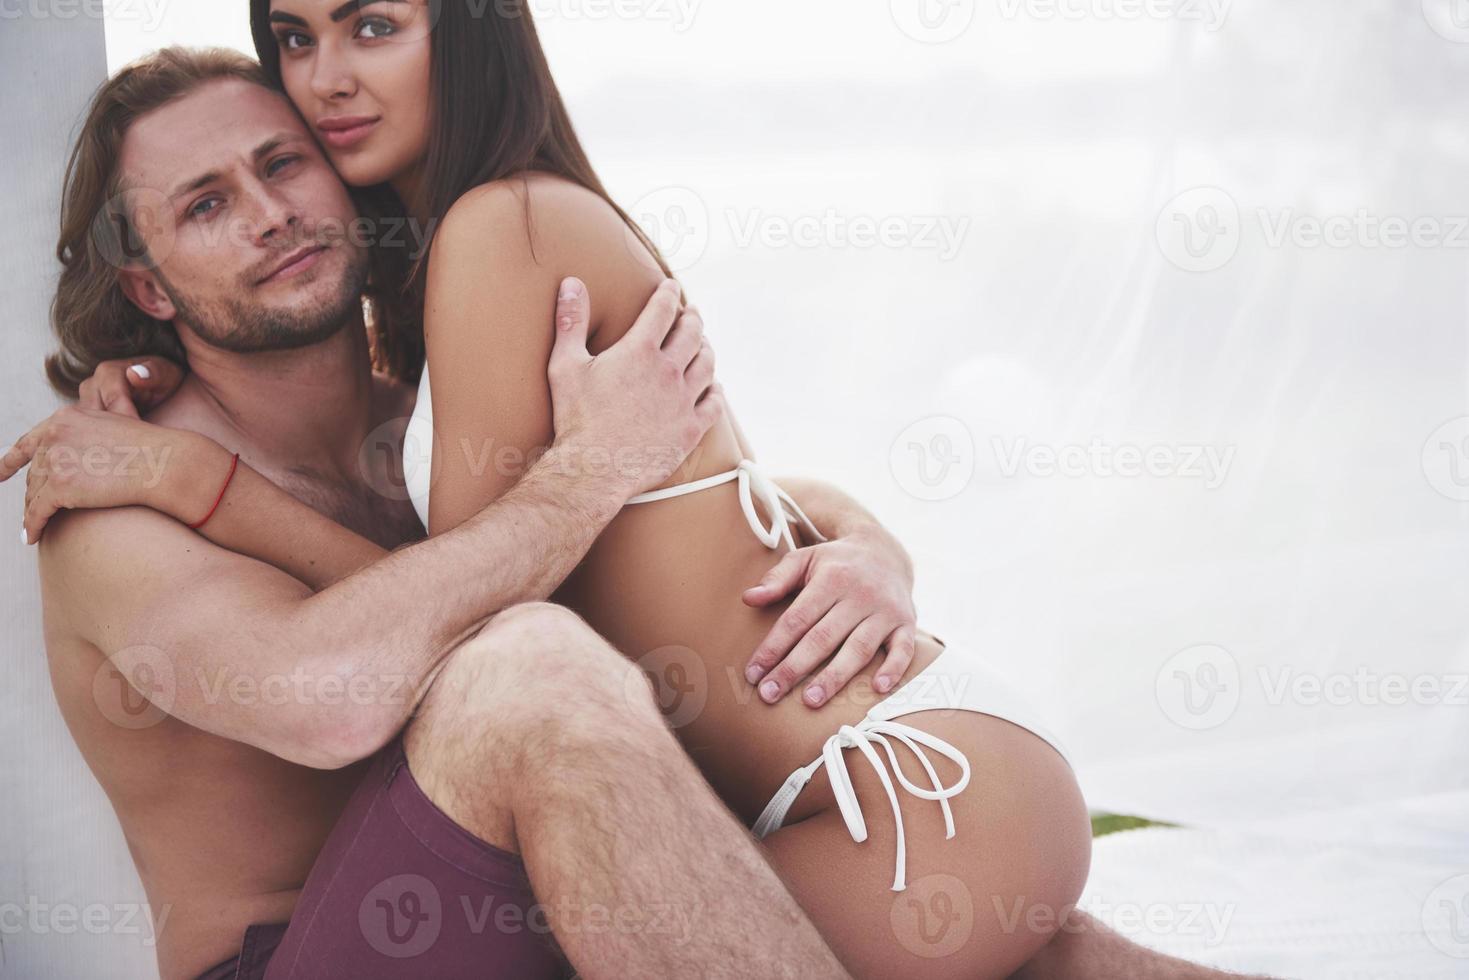 un couple romantique sur la plage en maillot de bain, de beaux jeunes sexy photo